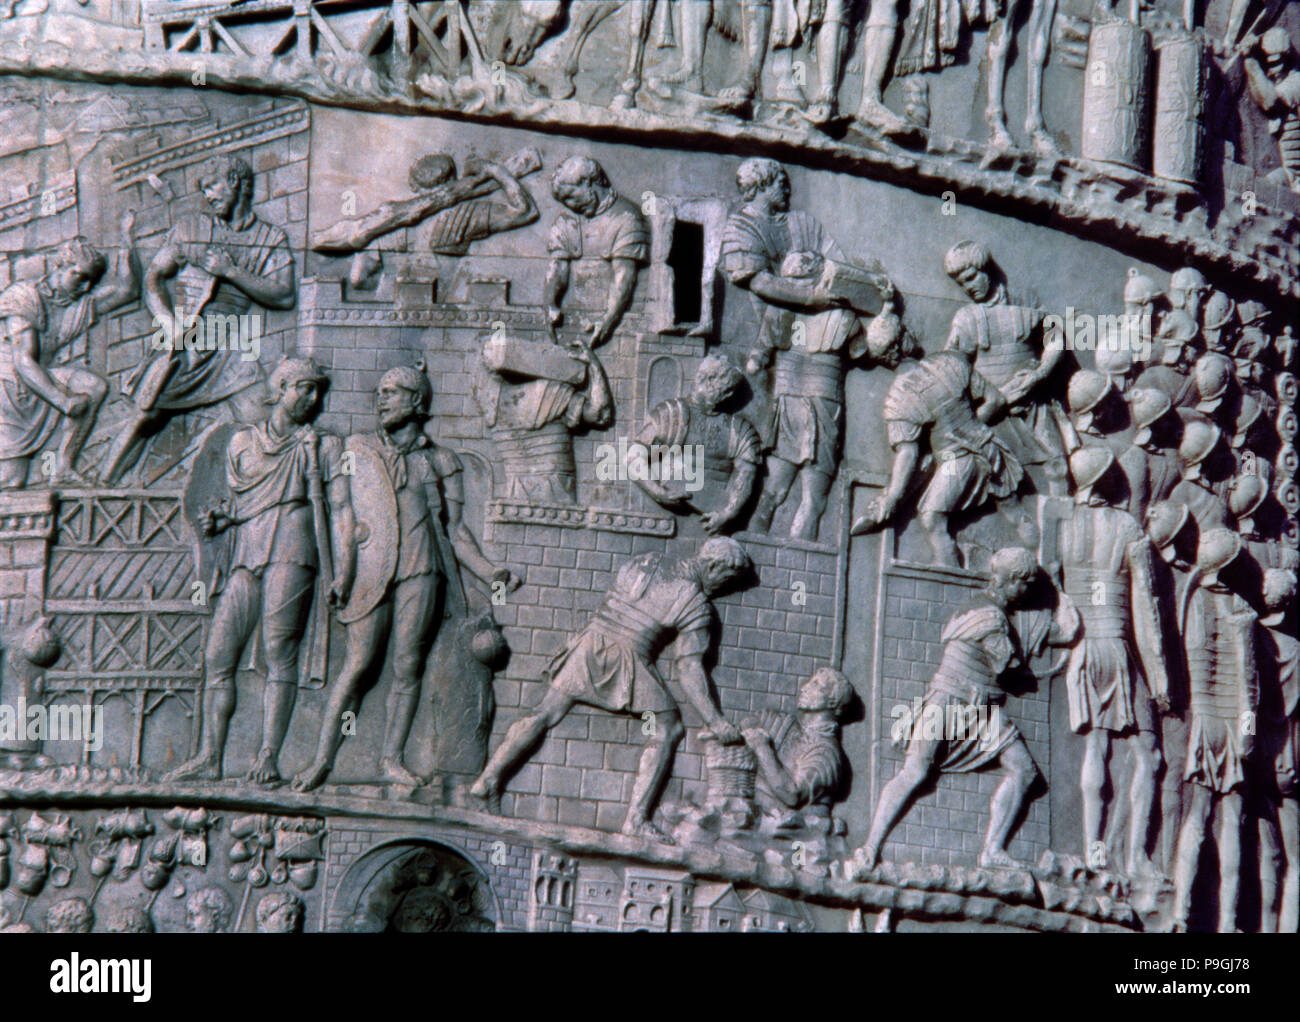 Colonna di Traiano, rilievo raffigurante la costruzione di un accampamento romano, dettaglio. Foto Stock